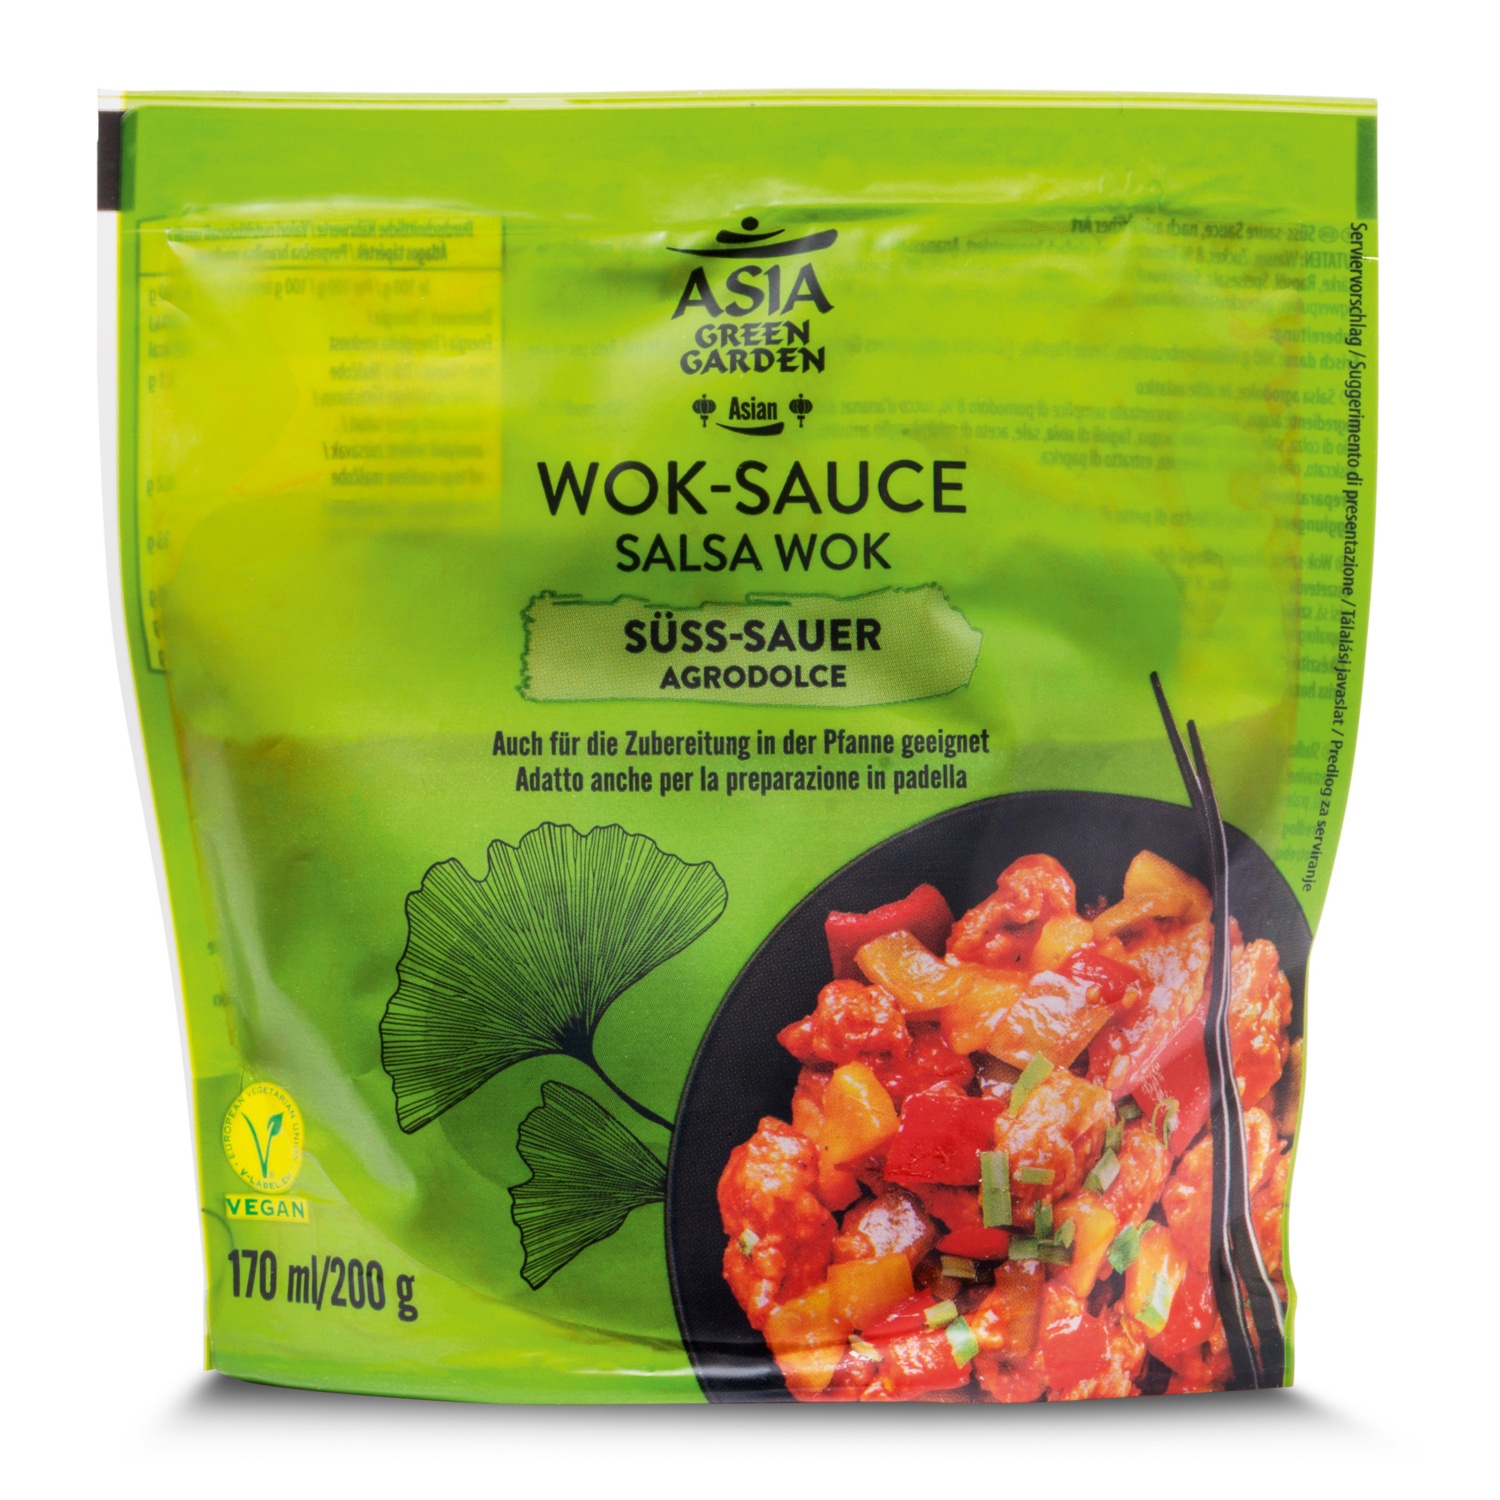 ASIA GREEN GARDEN Salsa per wok agrodolce